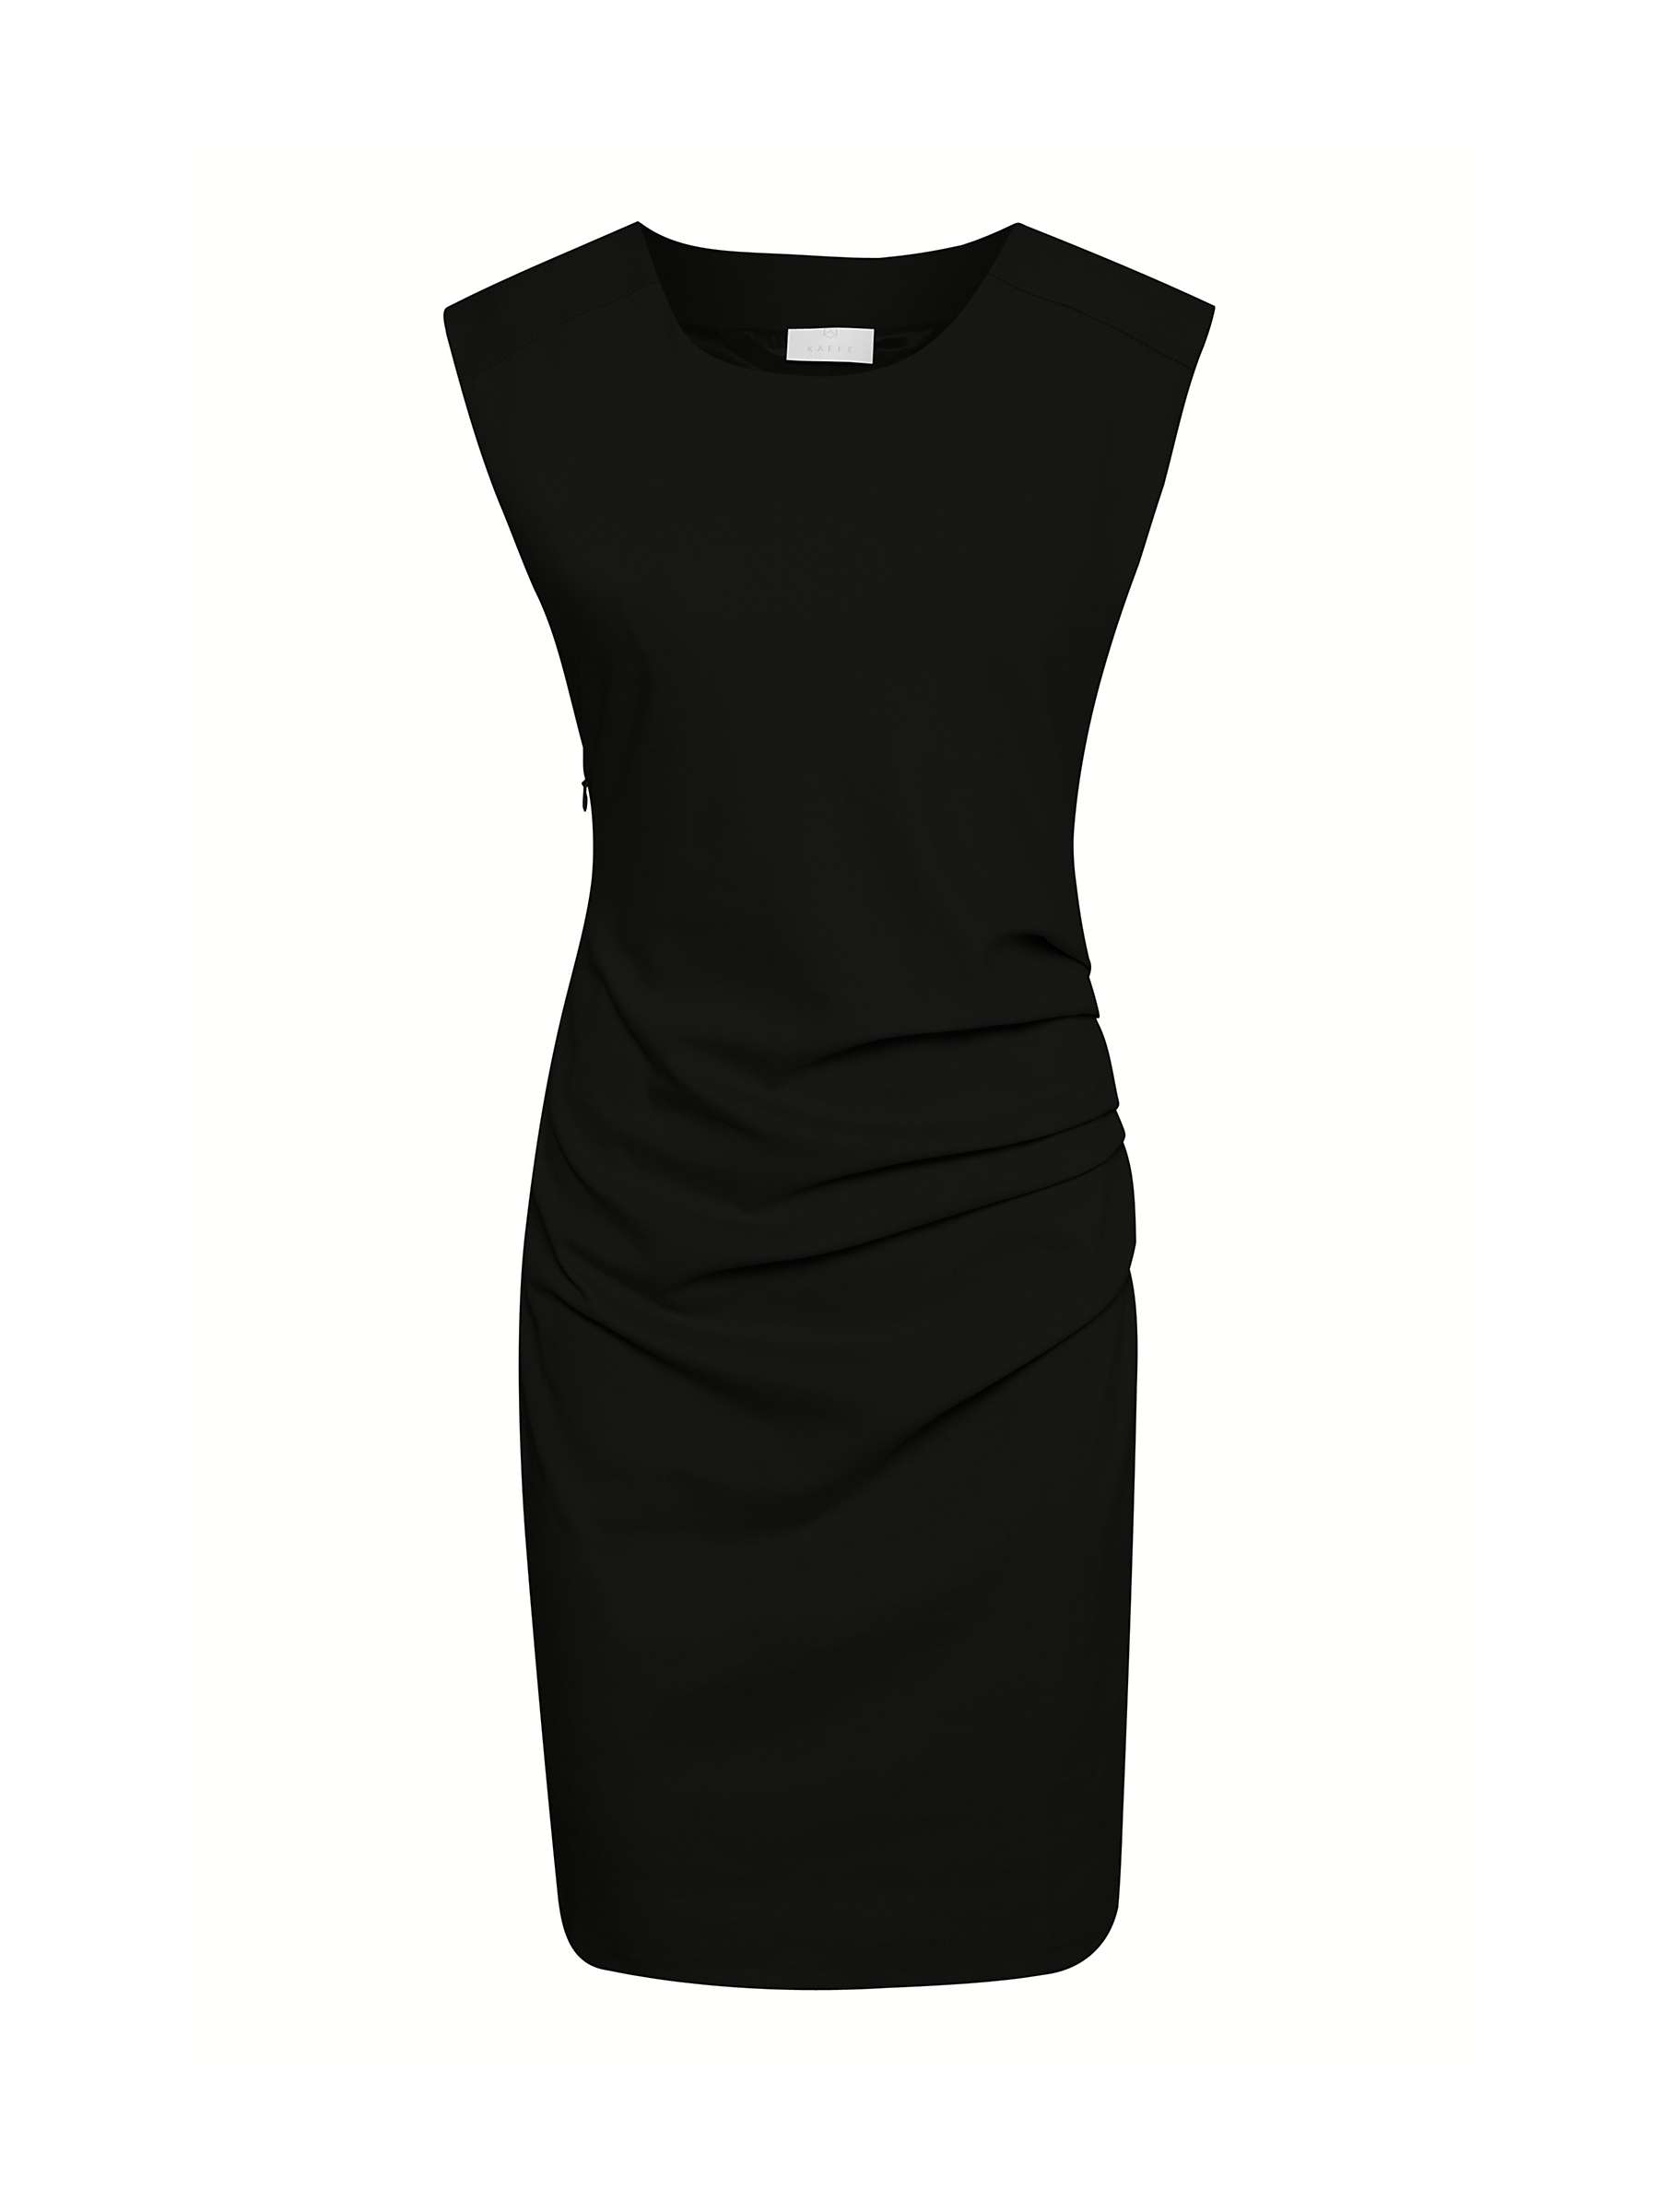 Buy KAFFE India Cocktail Dress, Black Deep Online at johnlewis.com